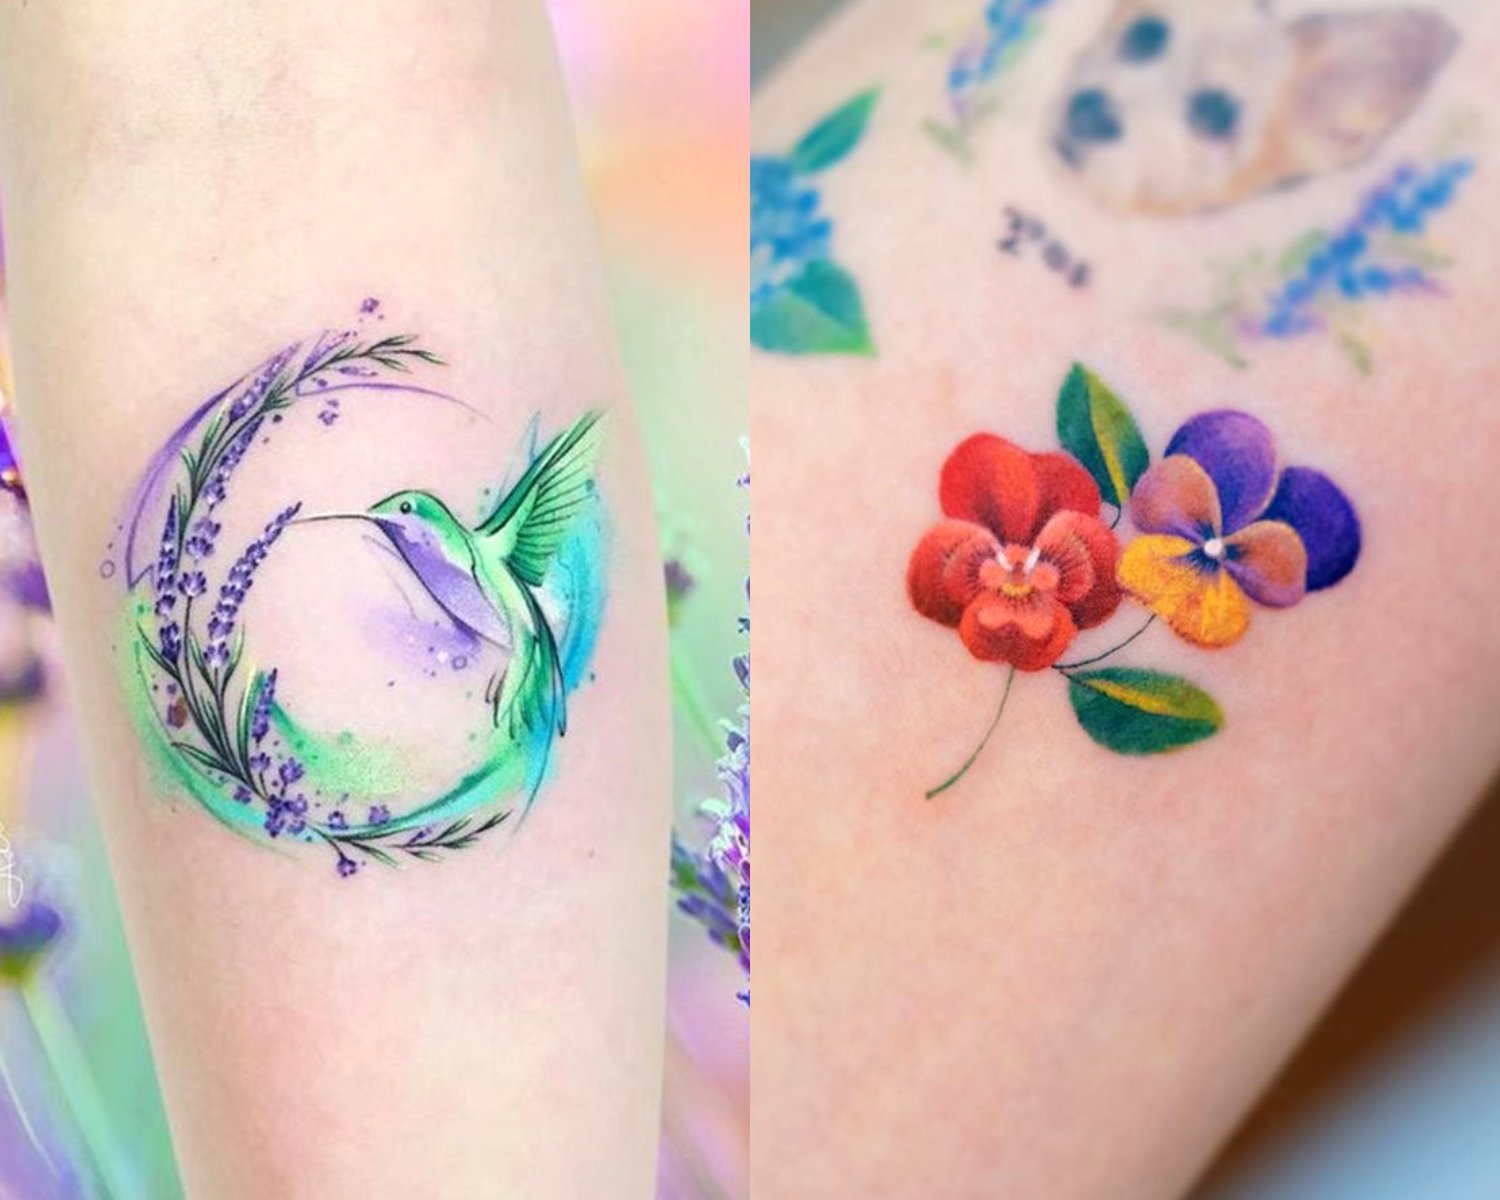 Estilos de tatuajes creativos para llenar tu piel de color